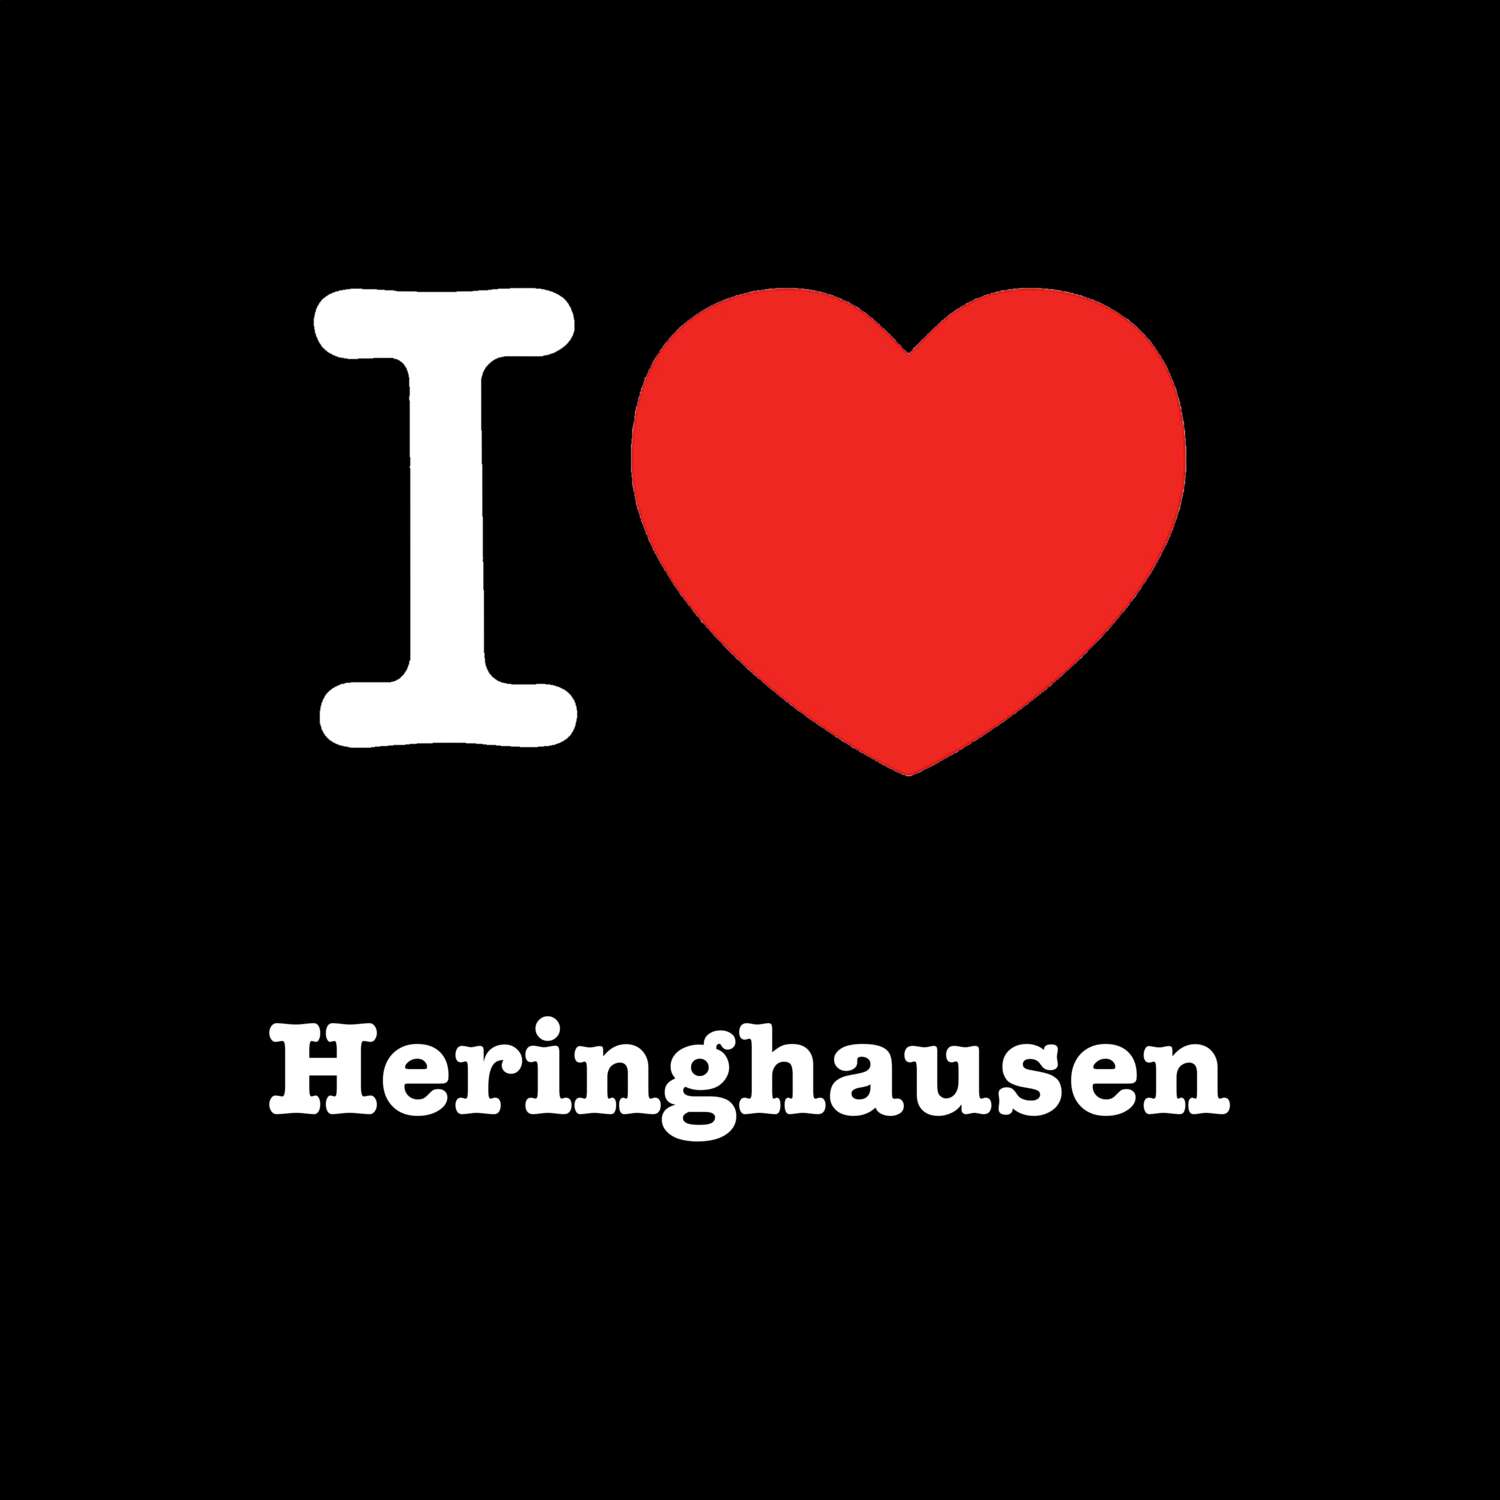 Heringhausen T-Shirt »I love«